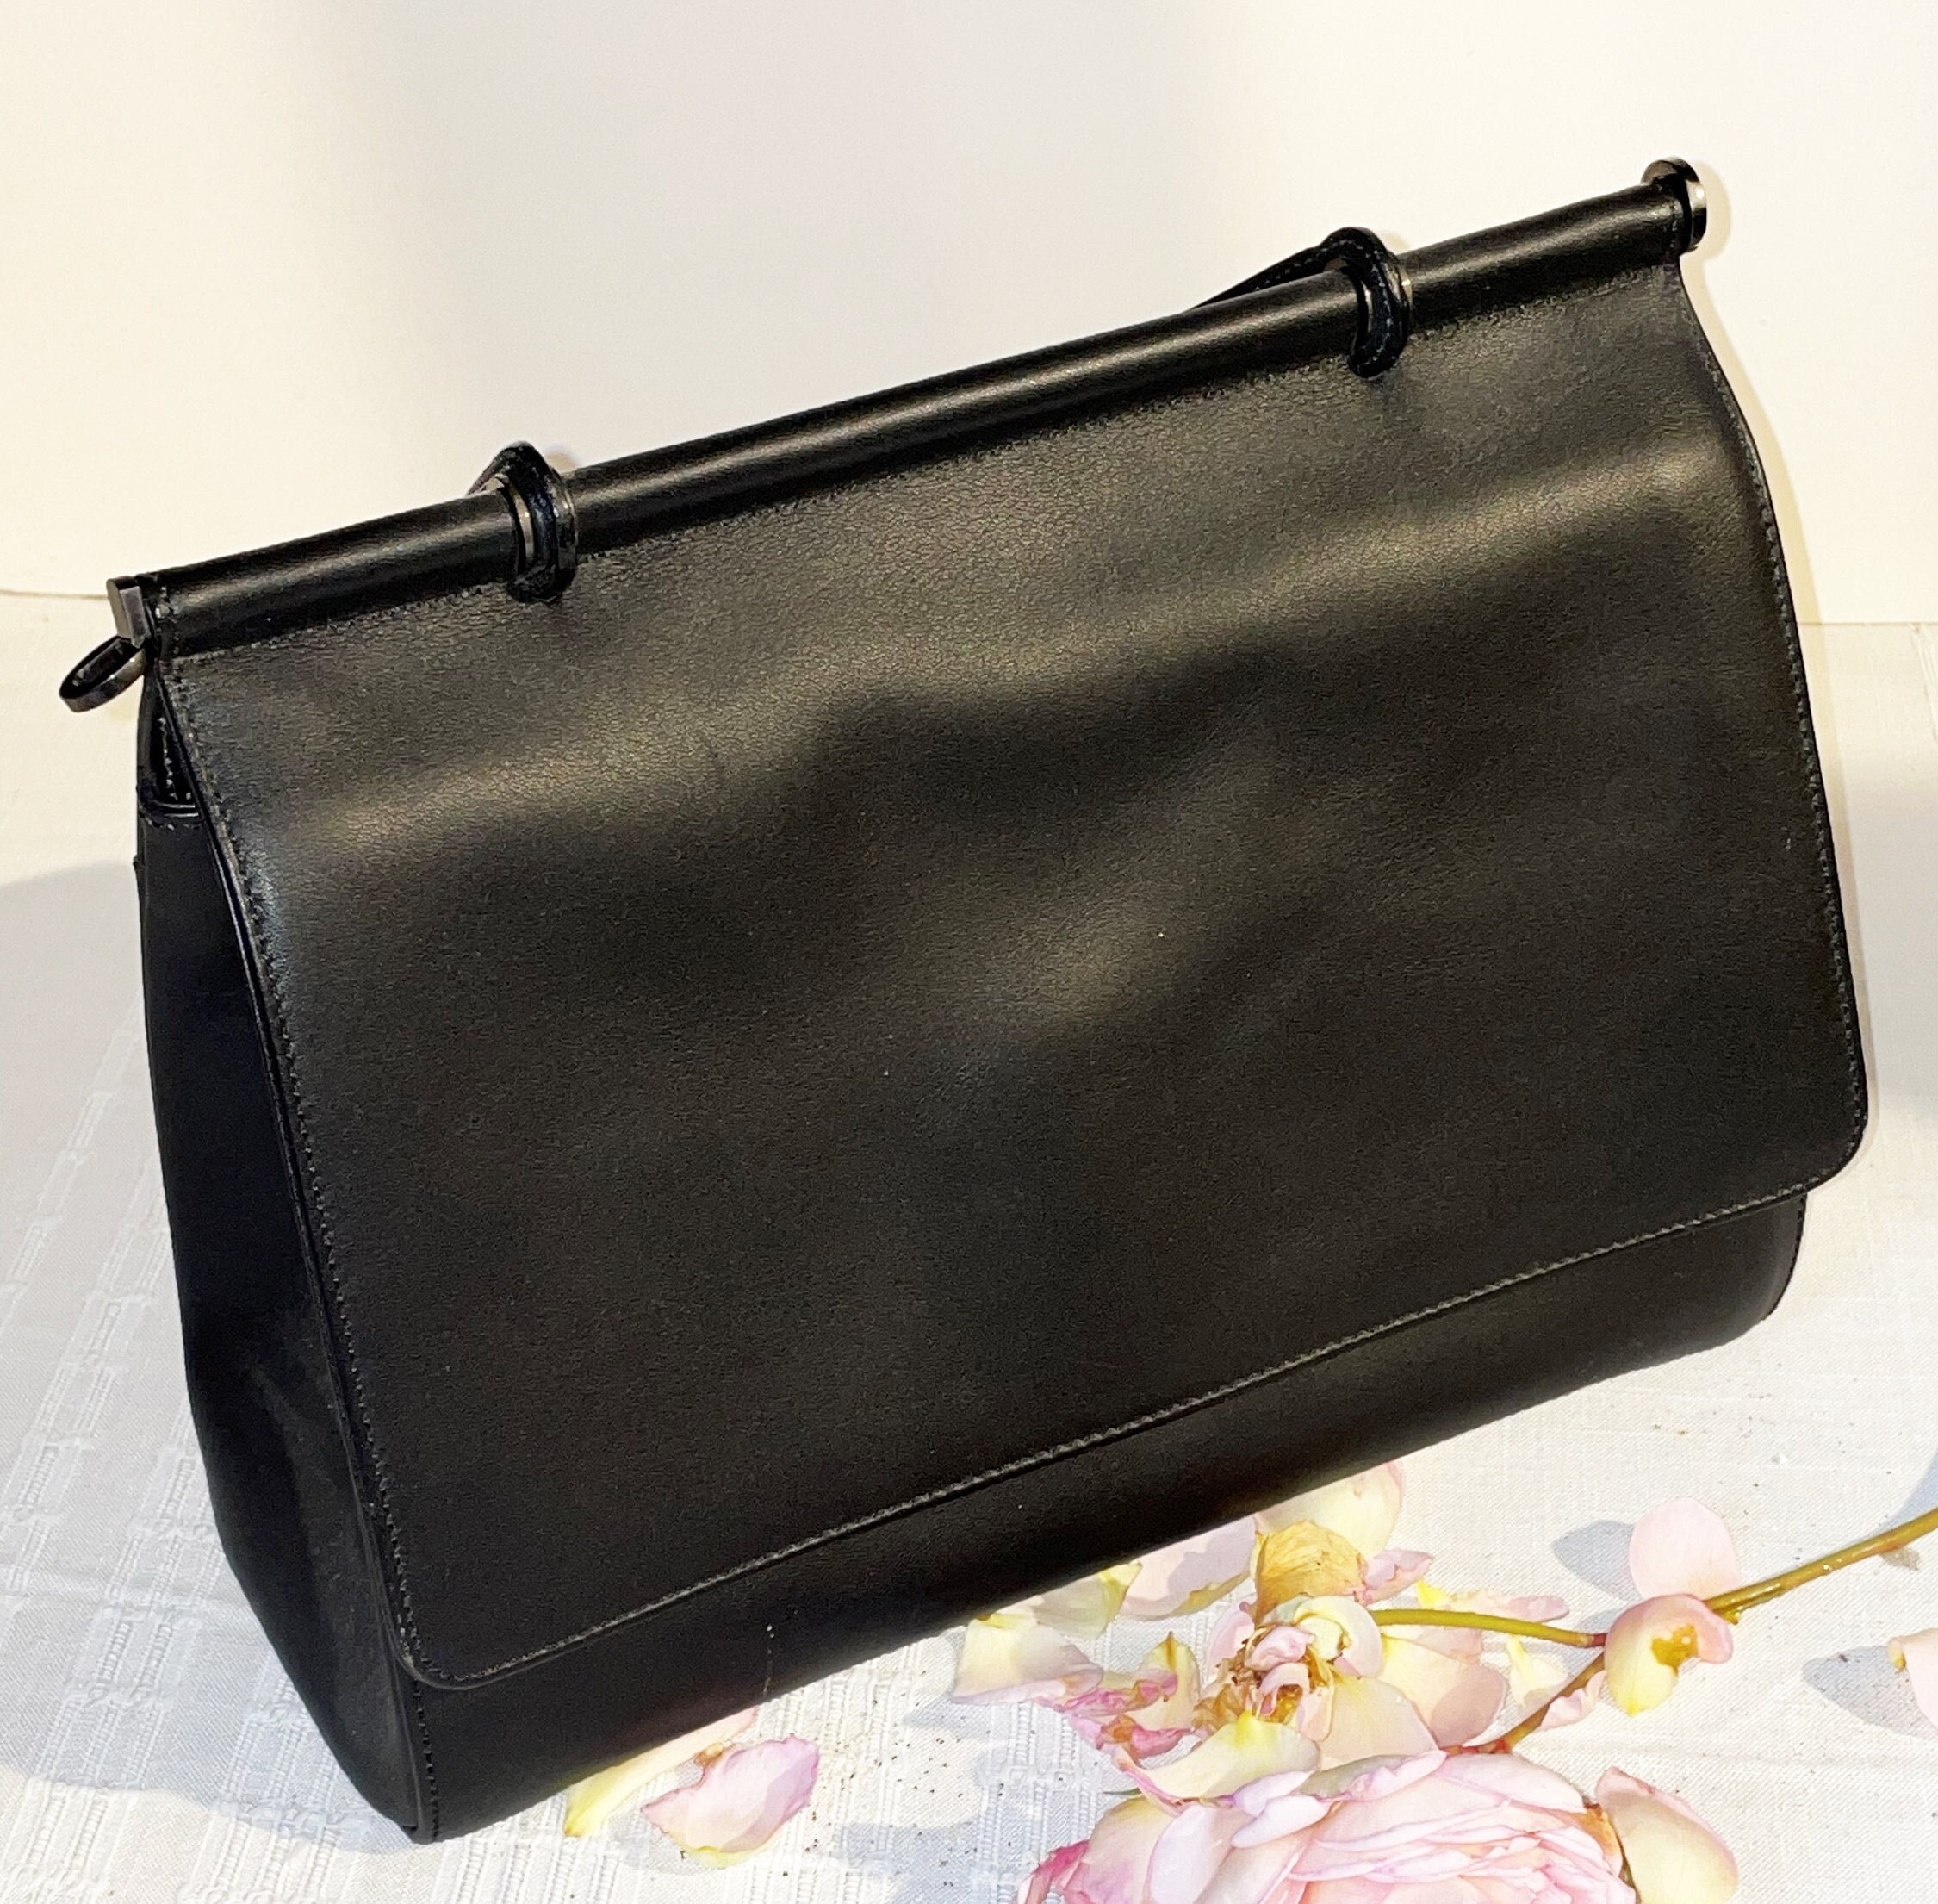 You Can Own Grace Kelly's “Rear Window” Handbag